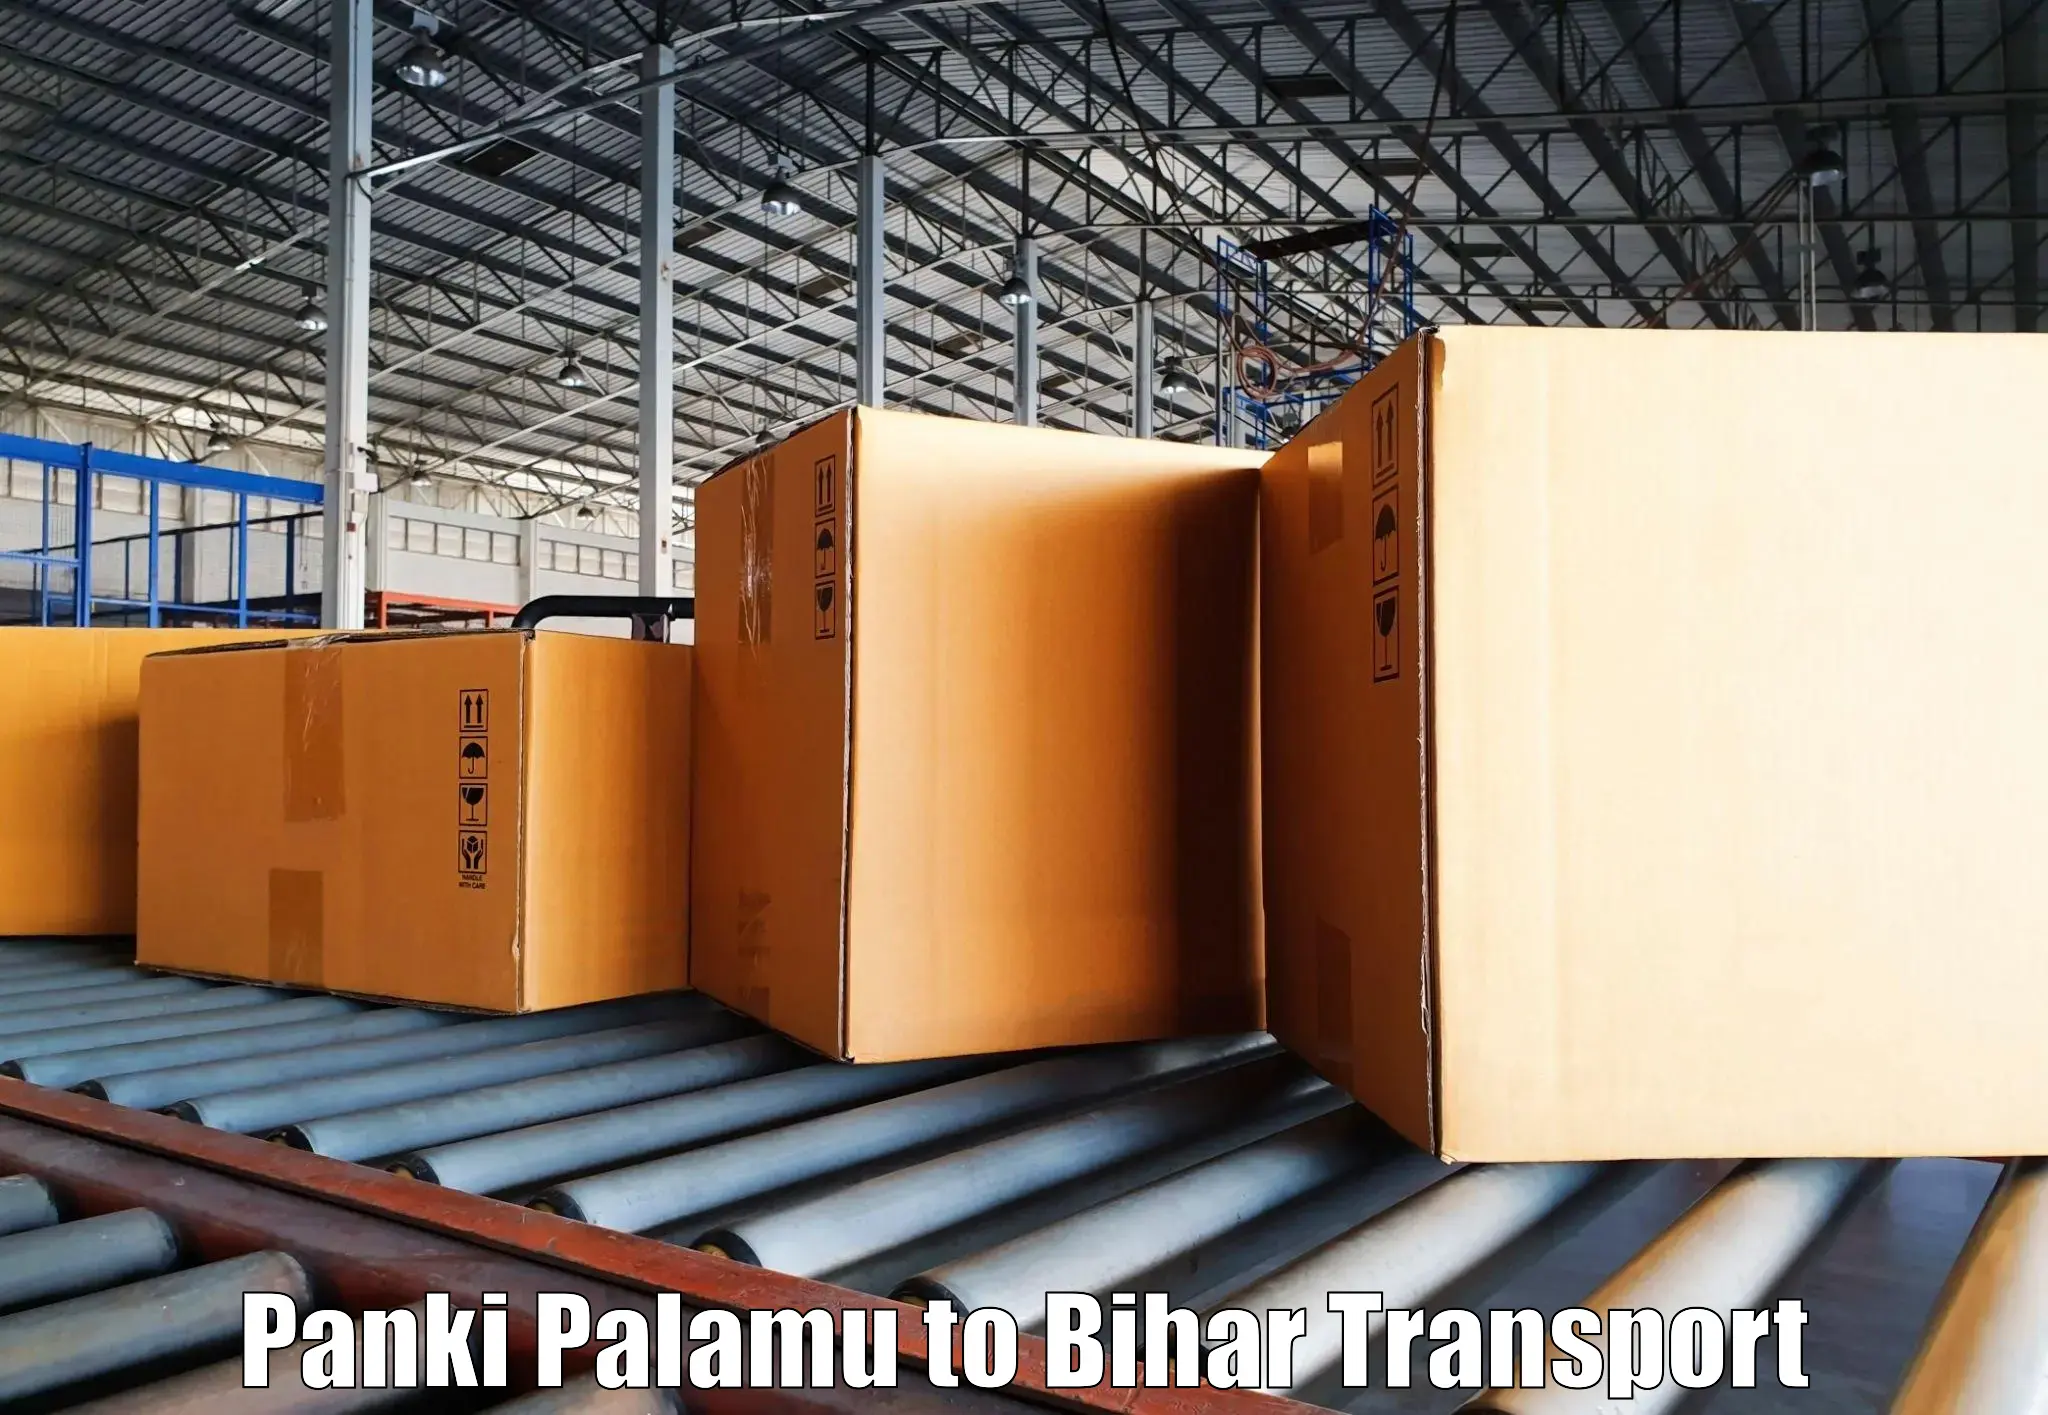 Transport in sharing Panki Palamu to Bihar